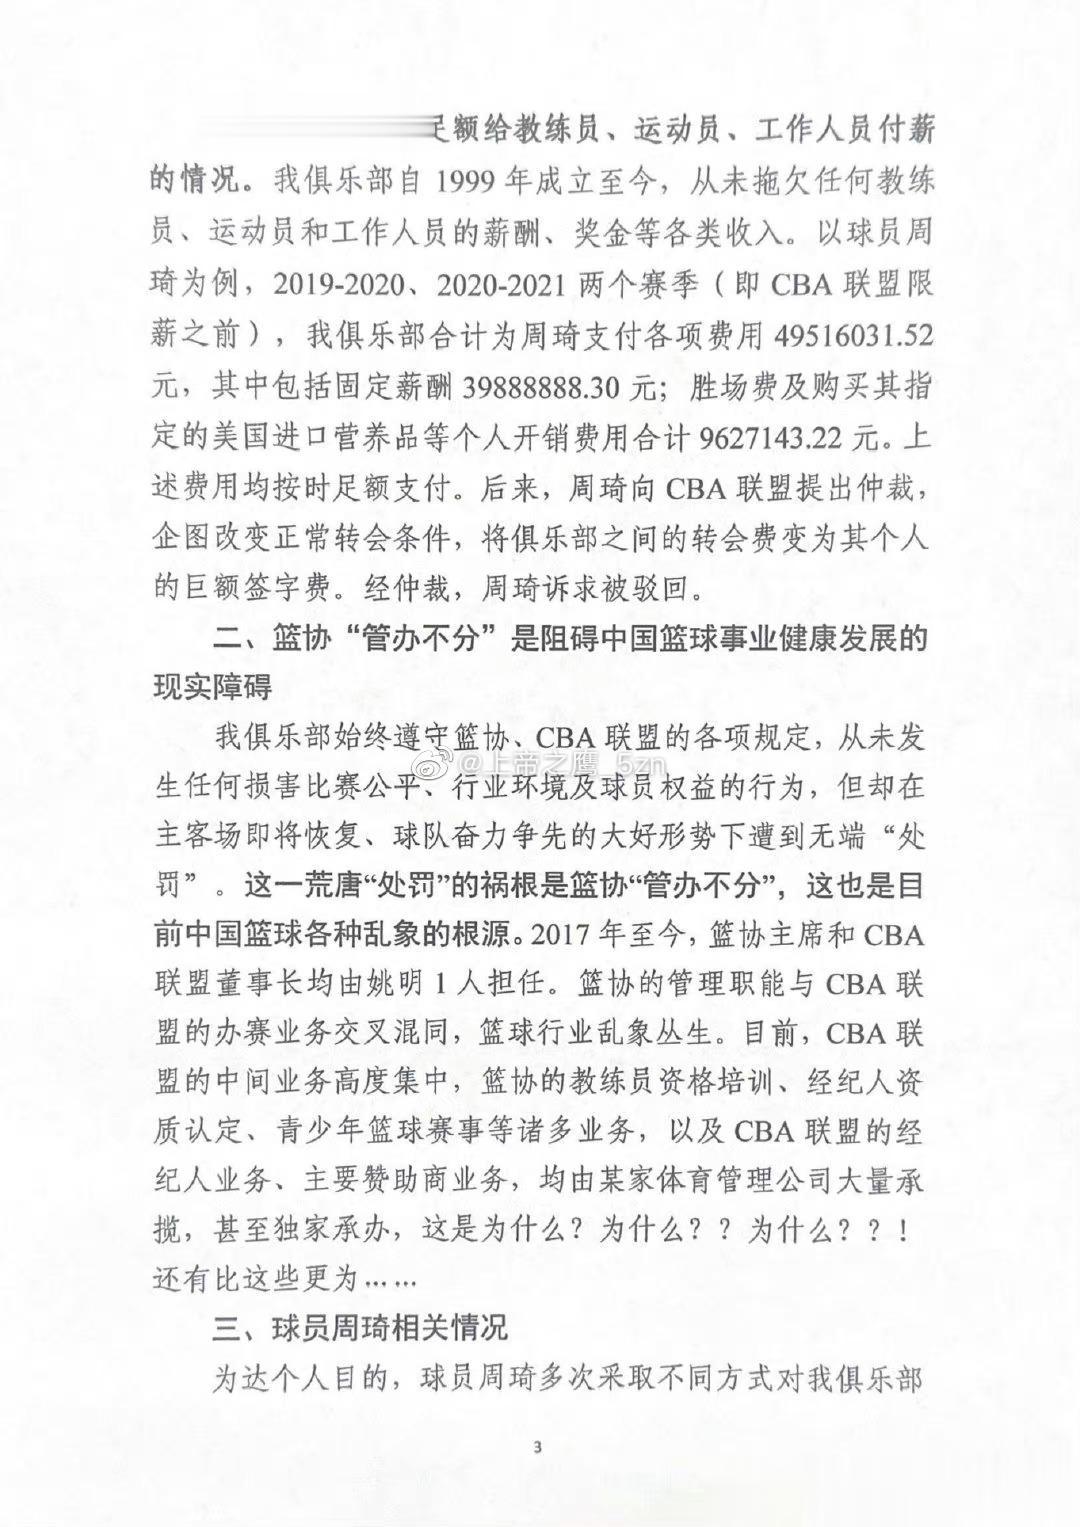  新疆广汇俱乐部深夜发表声明，怒喷篮协的处罚“严重错误、无理荒诞”，并宣布退出C(3)